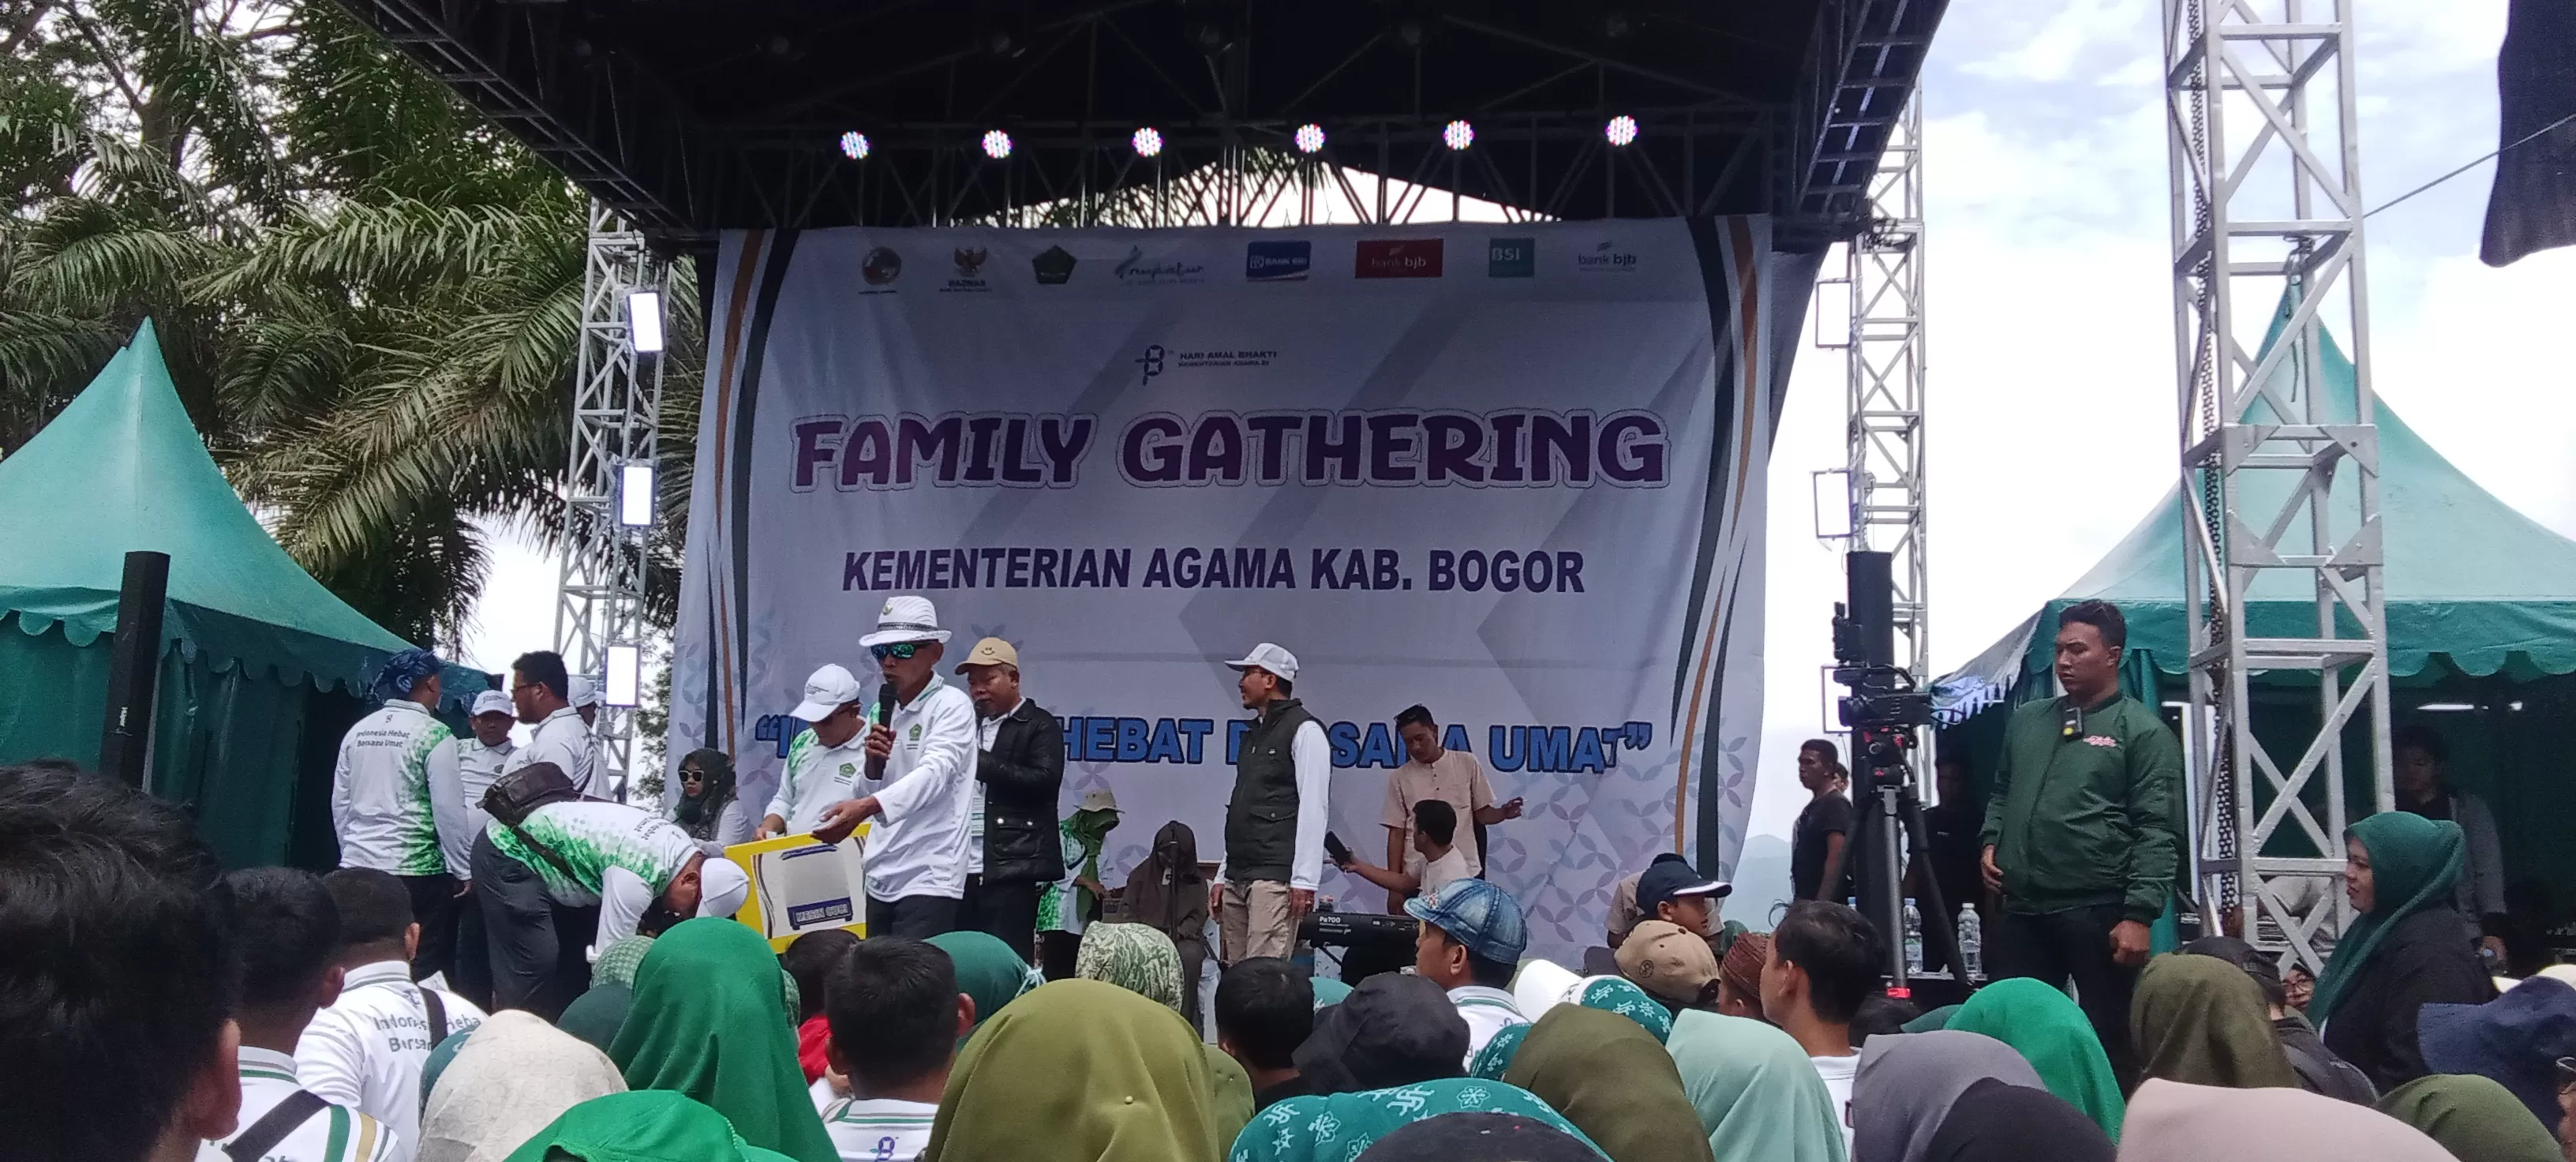 12.315 Orang Menghadiri Acara Family Gatehering Keluarga Besar Kementerian Agama Tingkat Kabupaten Bogor di Area Agro Wisata Gunung Mas Puncak